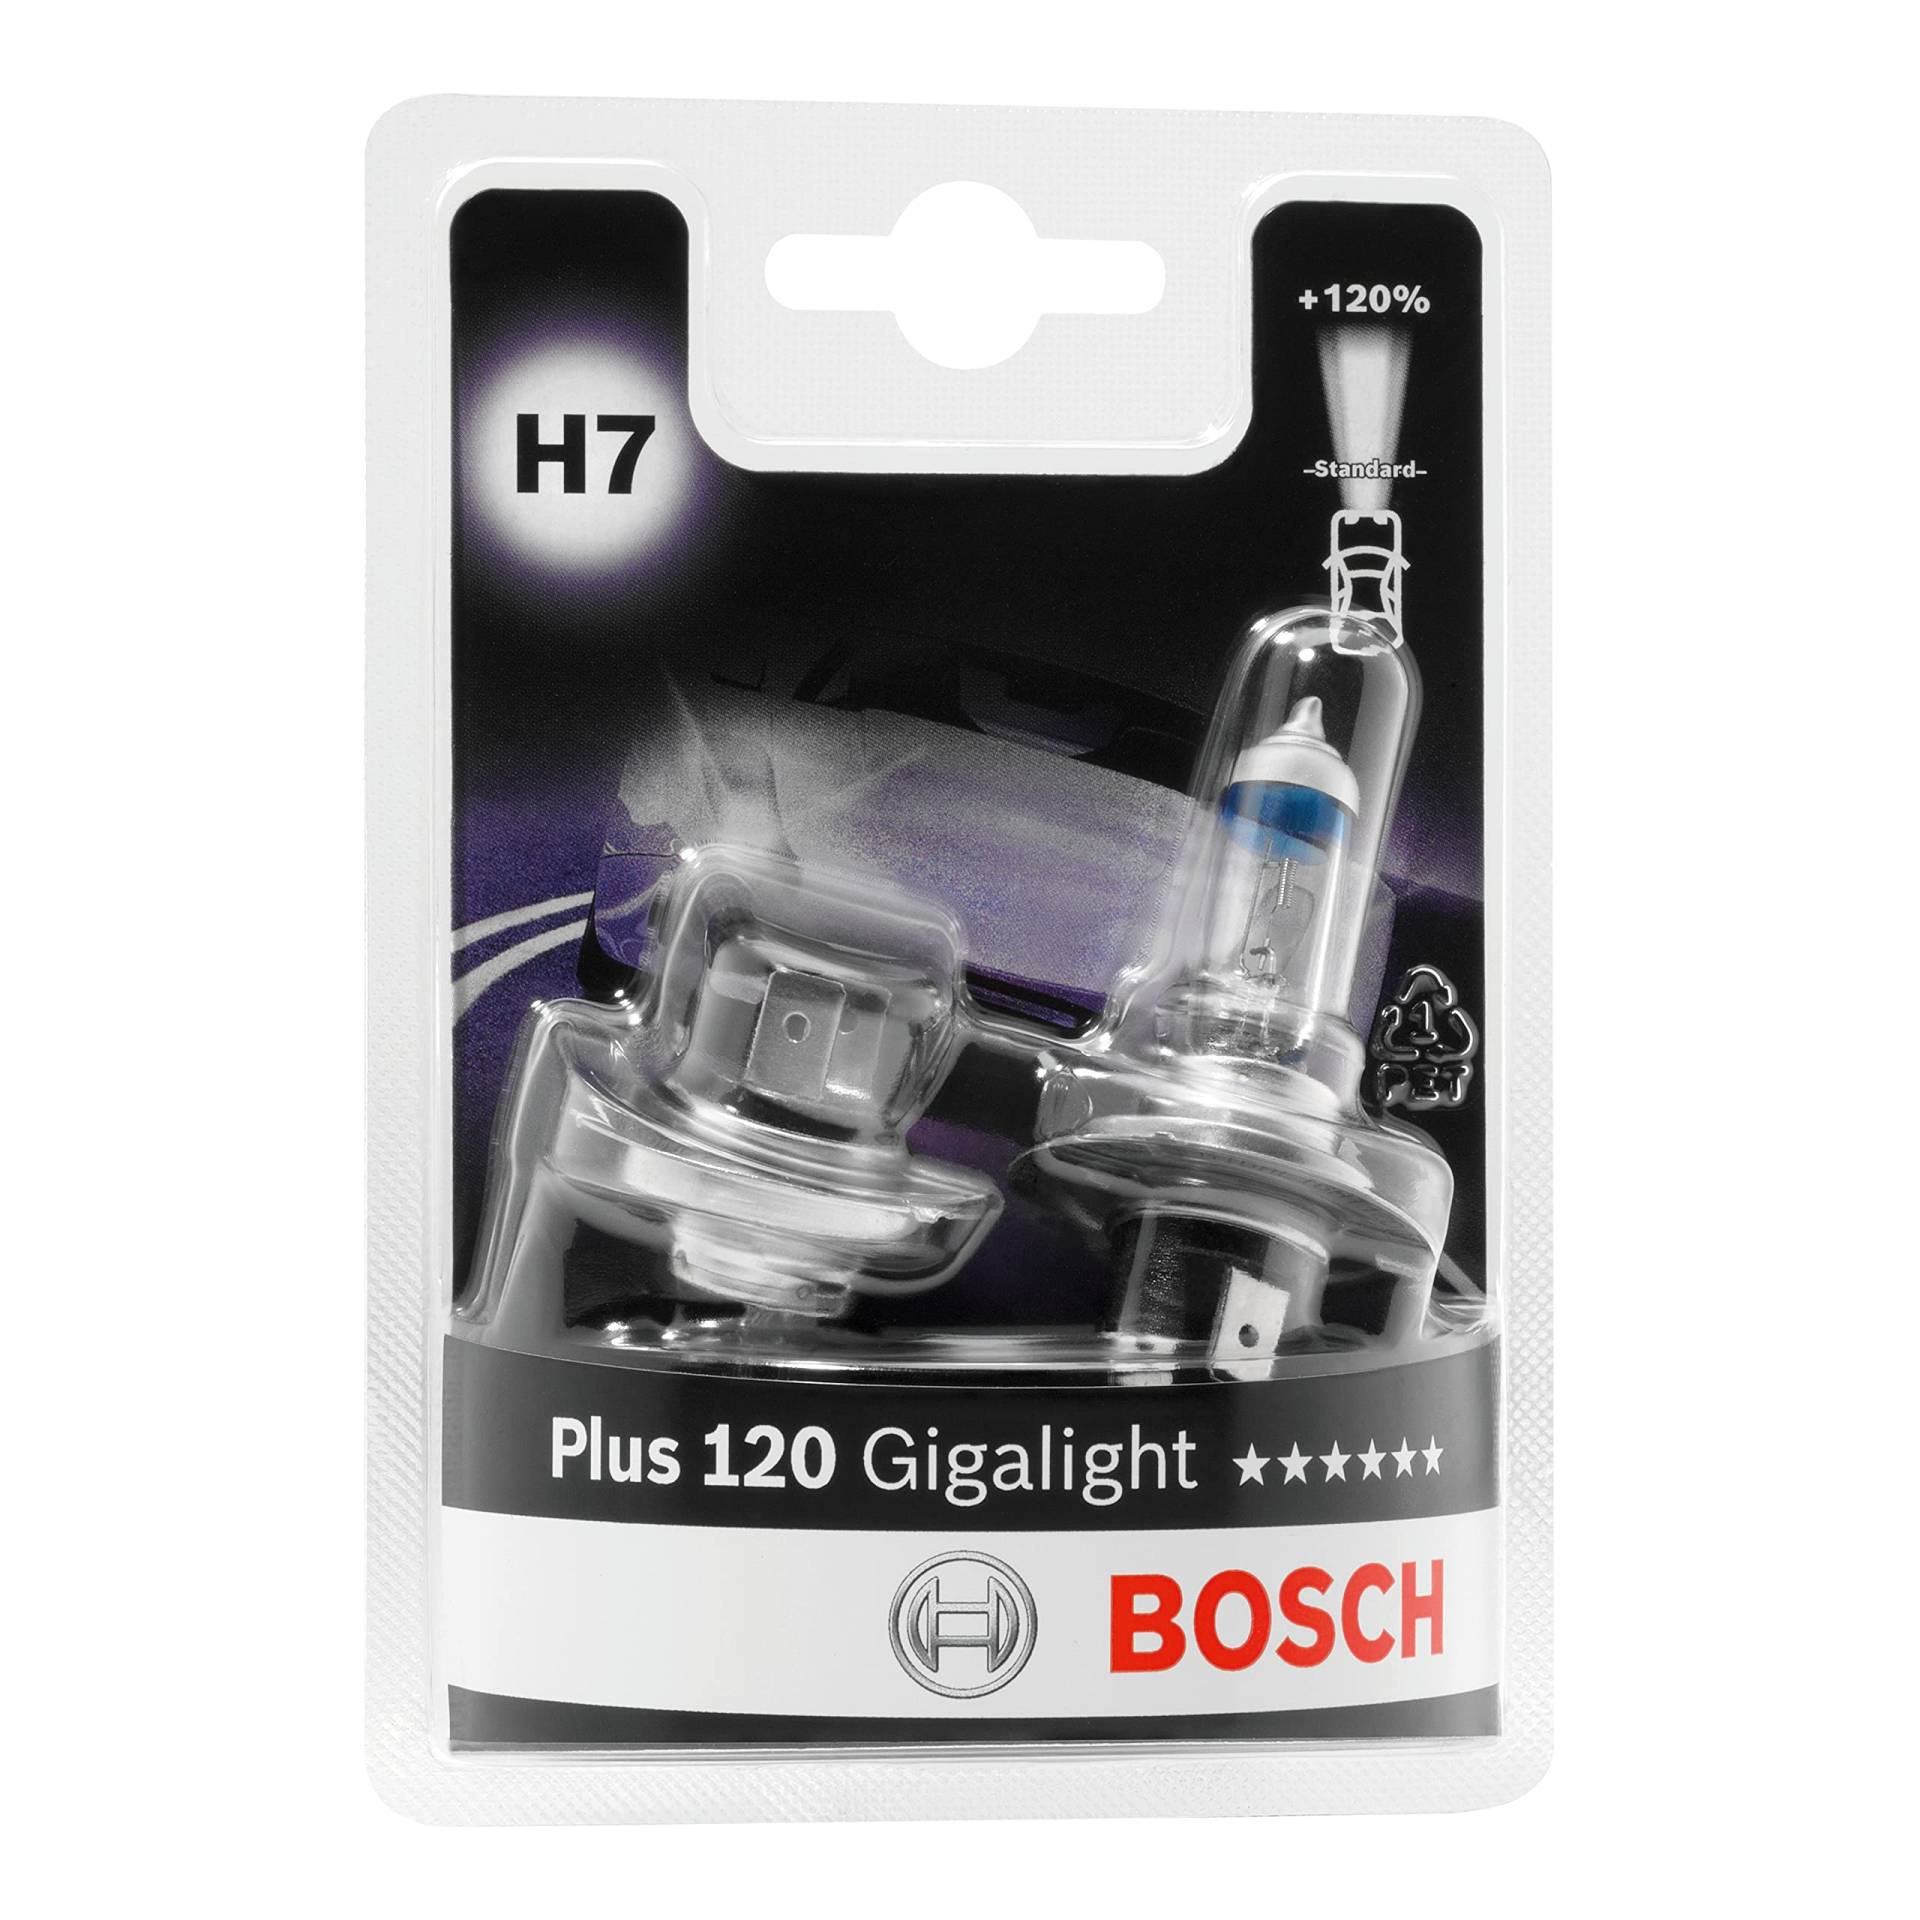 Bosch H7 Plus 120 Gigalight Lampen - 12 V 55 W PX26d - 2 Stücke von Bosch Automotive